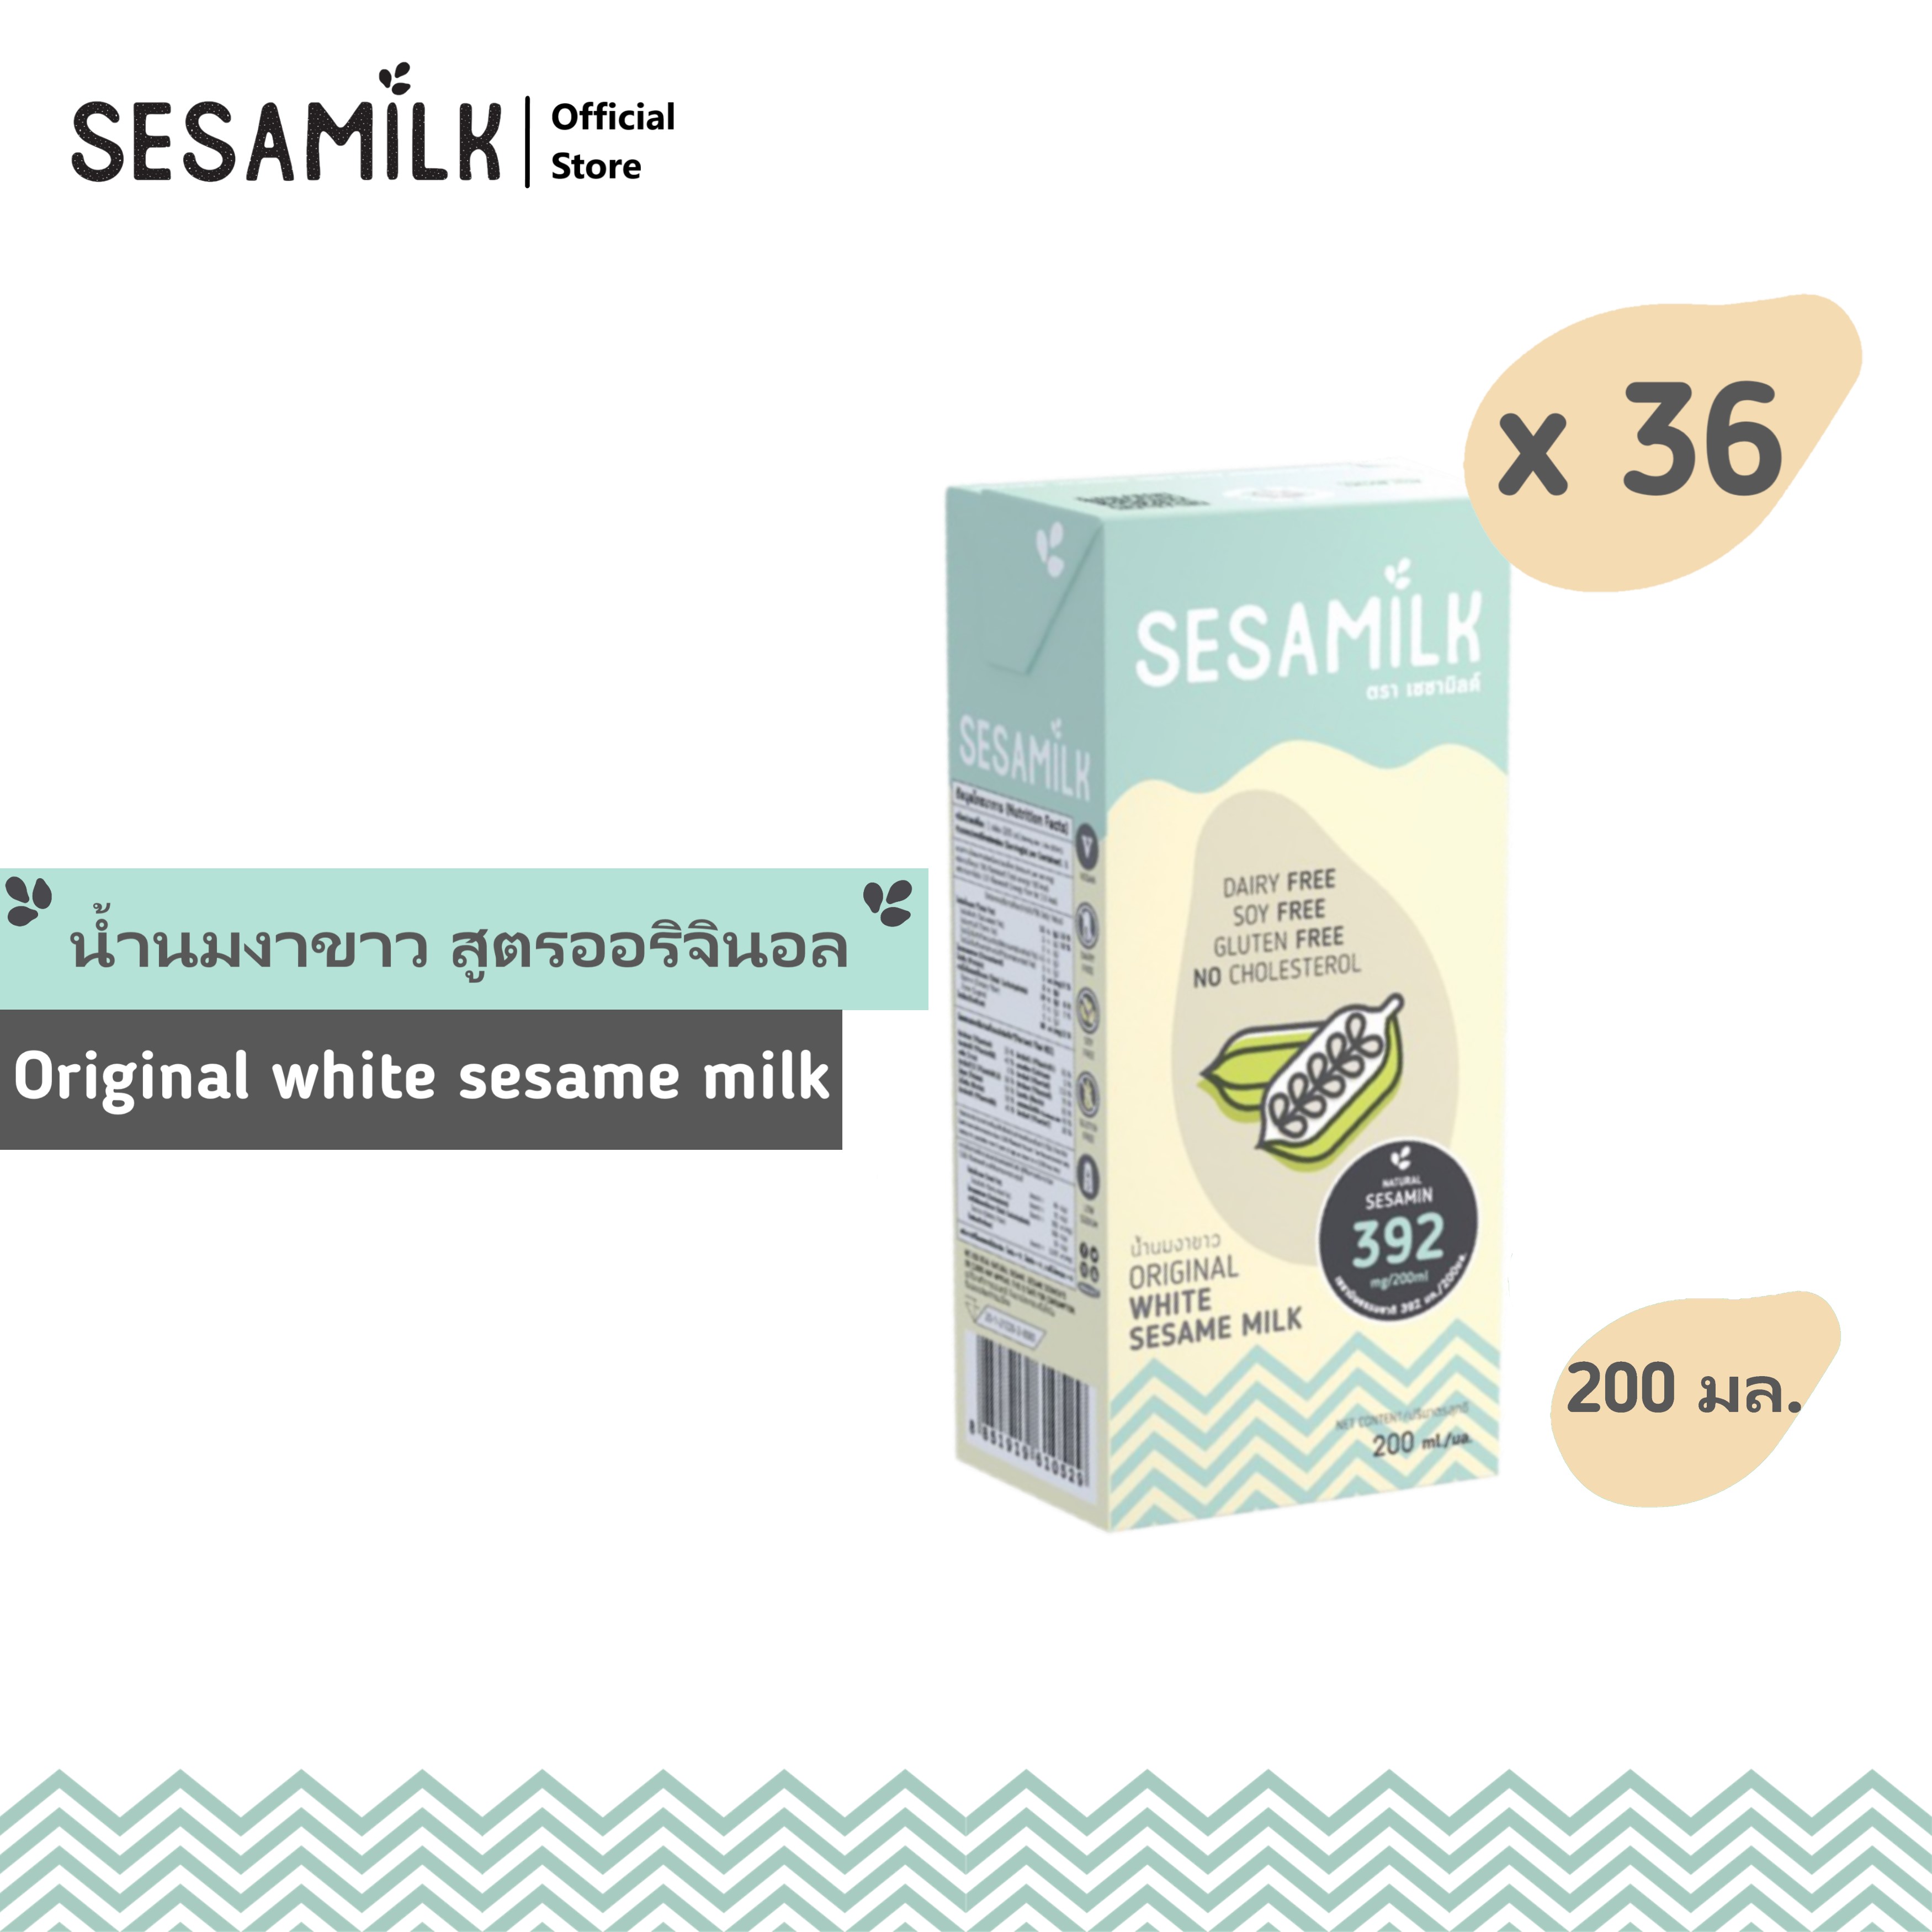 เซซามิลค์ น้ำนมงาขาว สูตรออรินัล  200ml x 36 กล่อง Sesamilk Original White sesame milk 200ml x 36 boxes